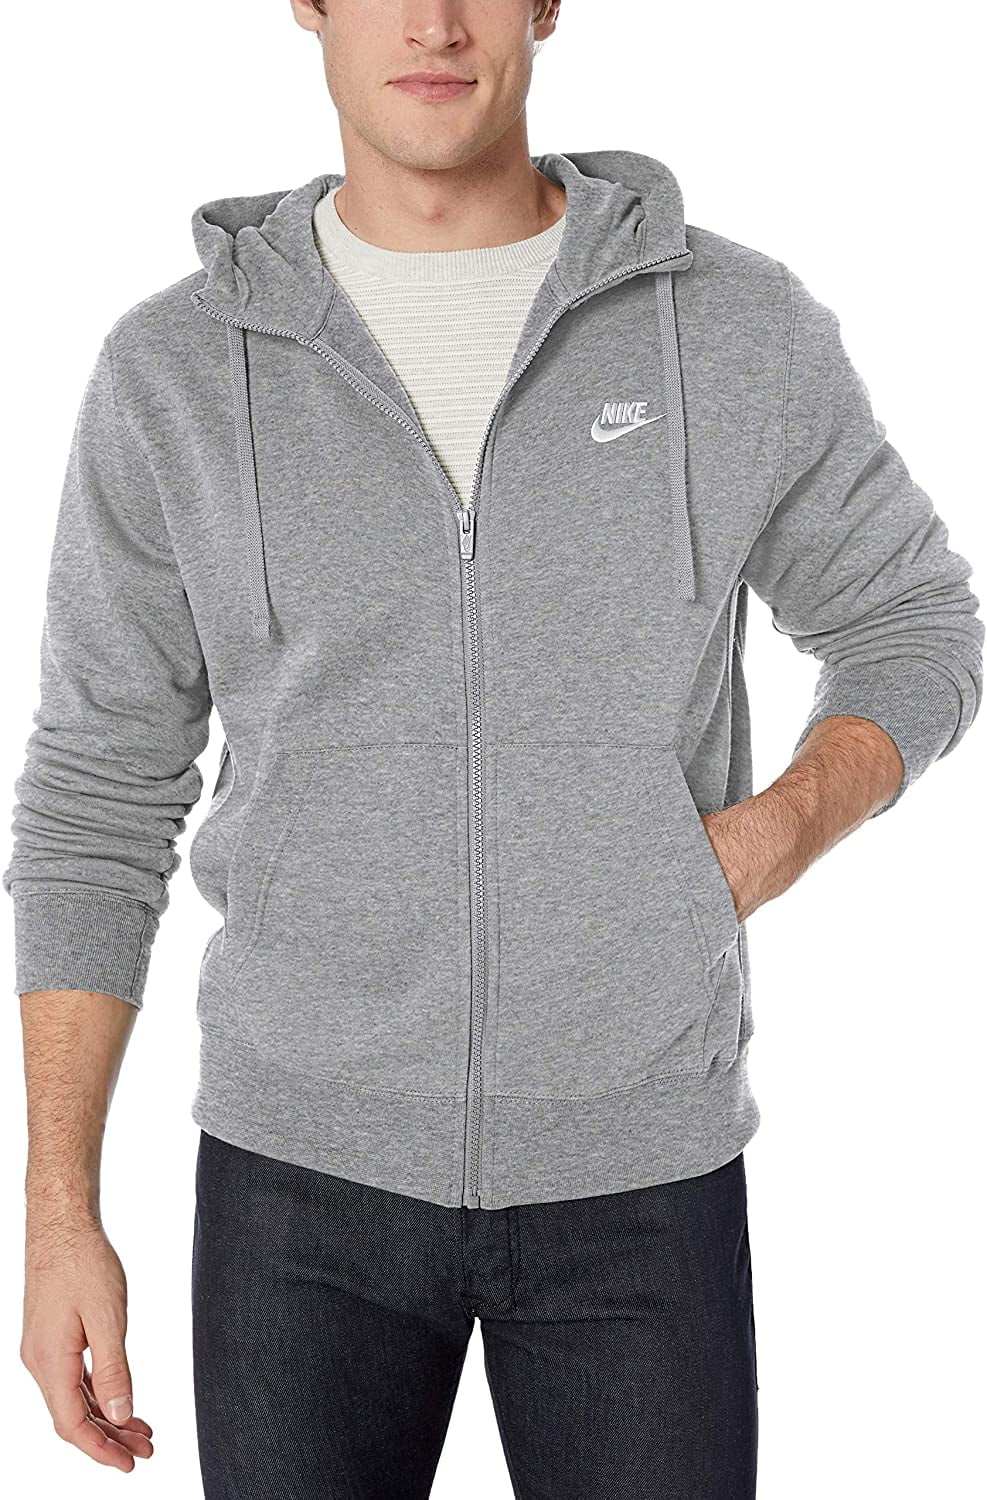 nike zip up hoodie mens grey